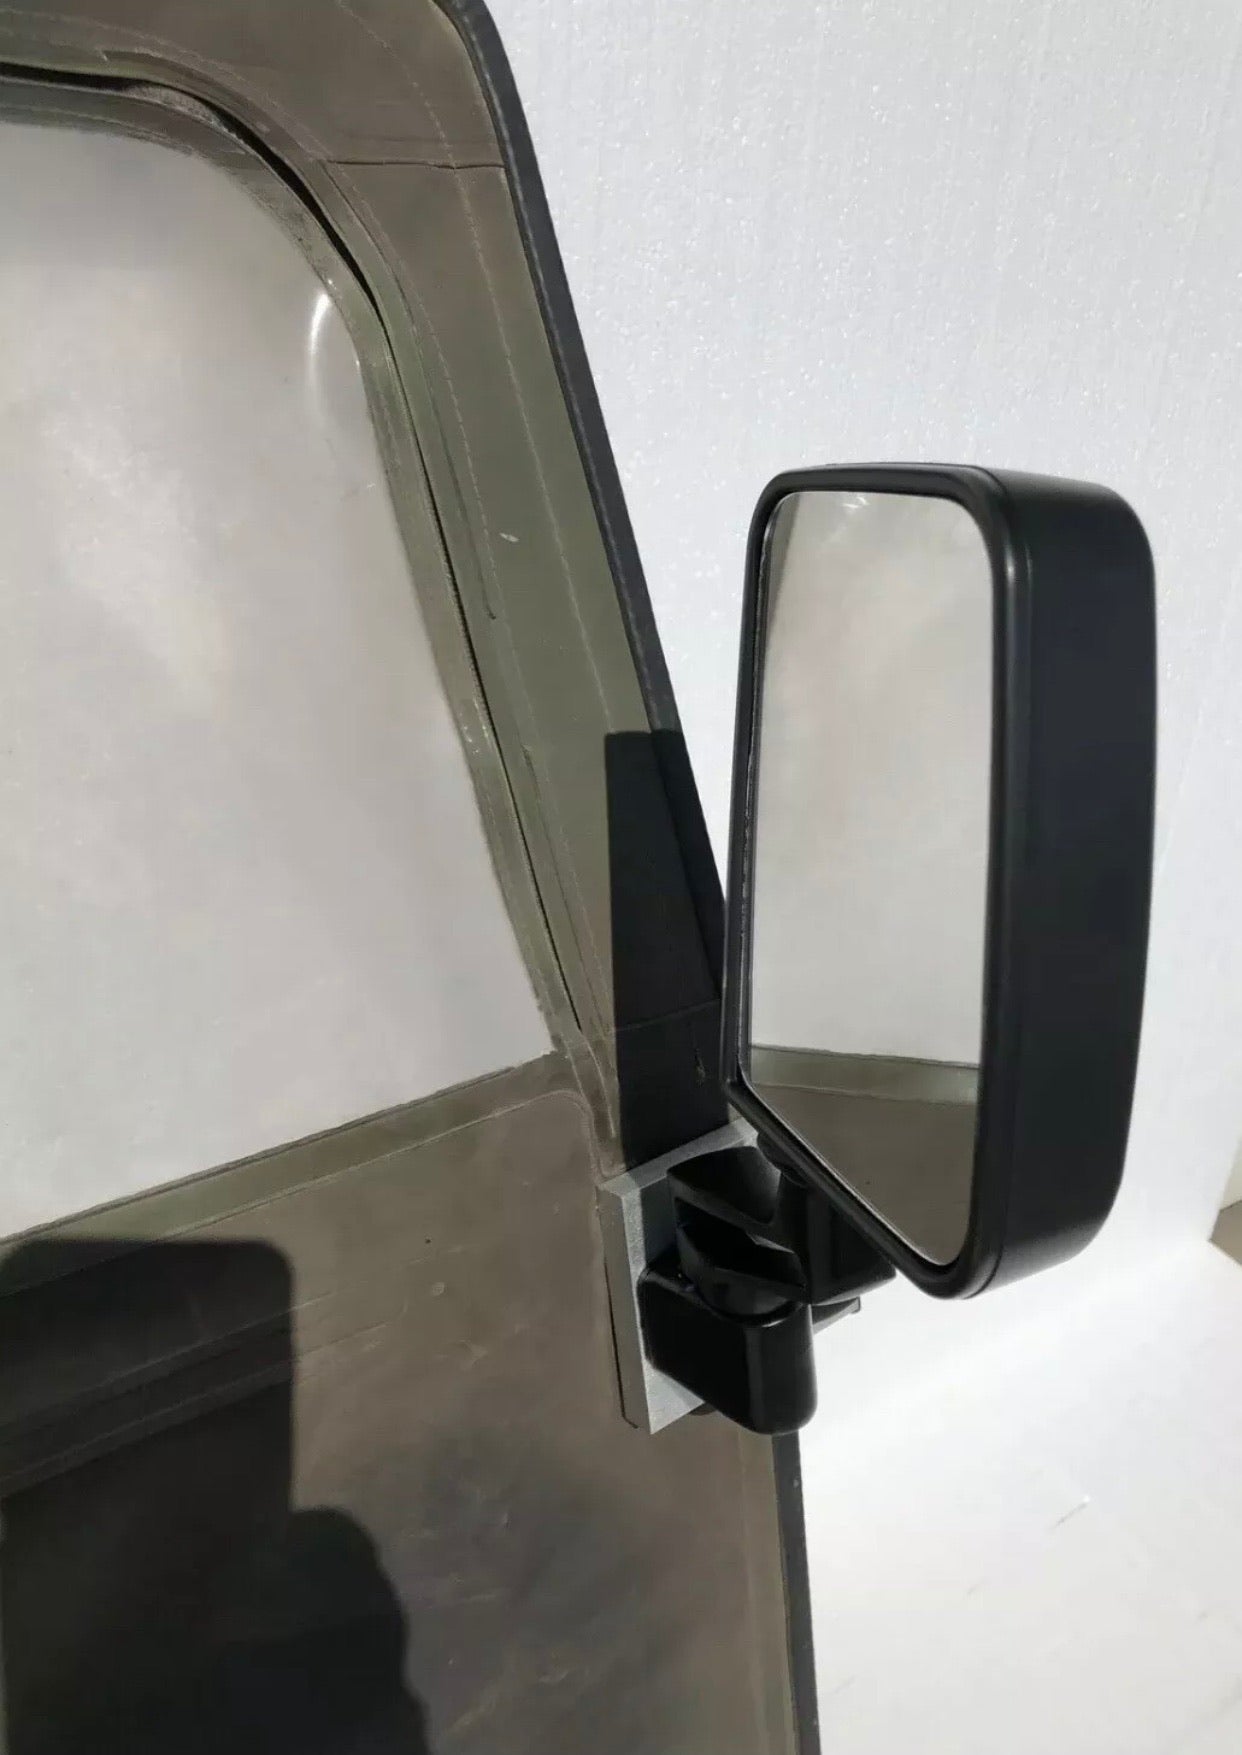 Paire de miroirs Humvee et plaques d'adaptateur pour portes de toile en toile molle militaire m998 montures